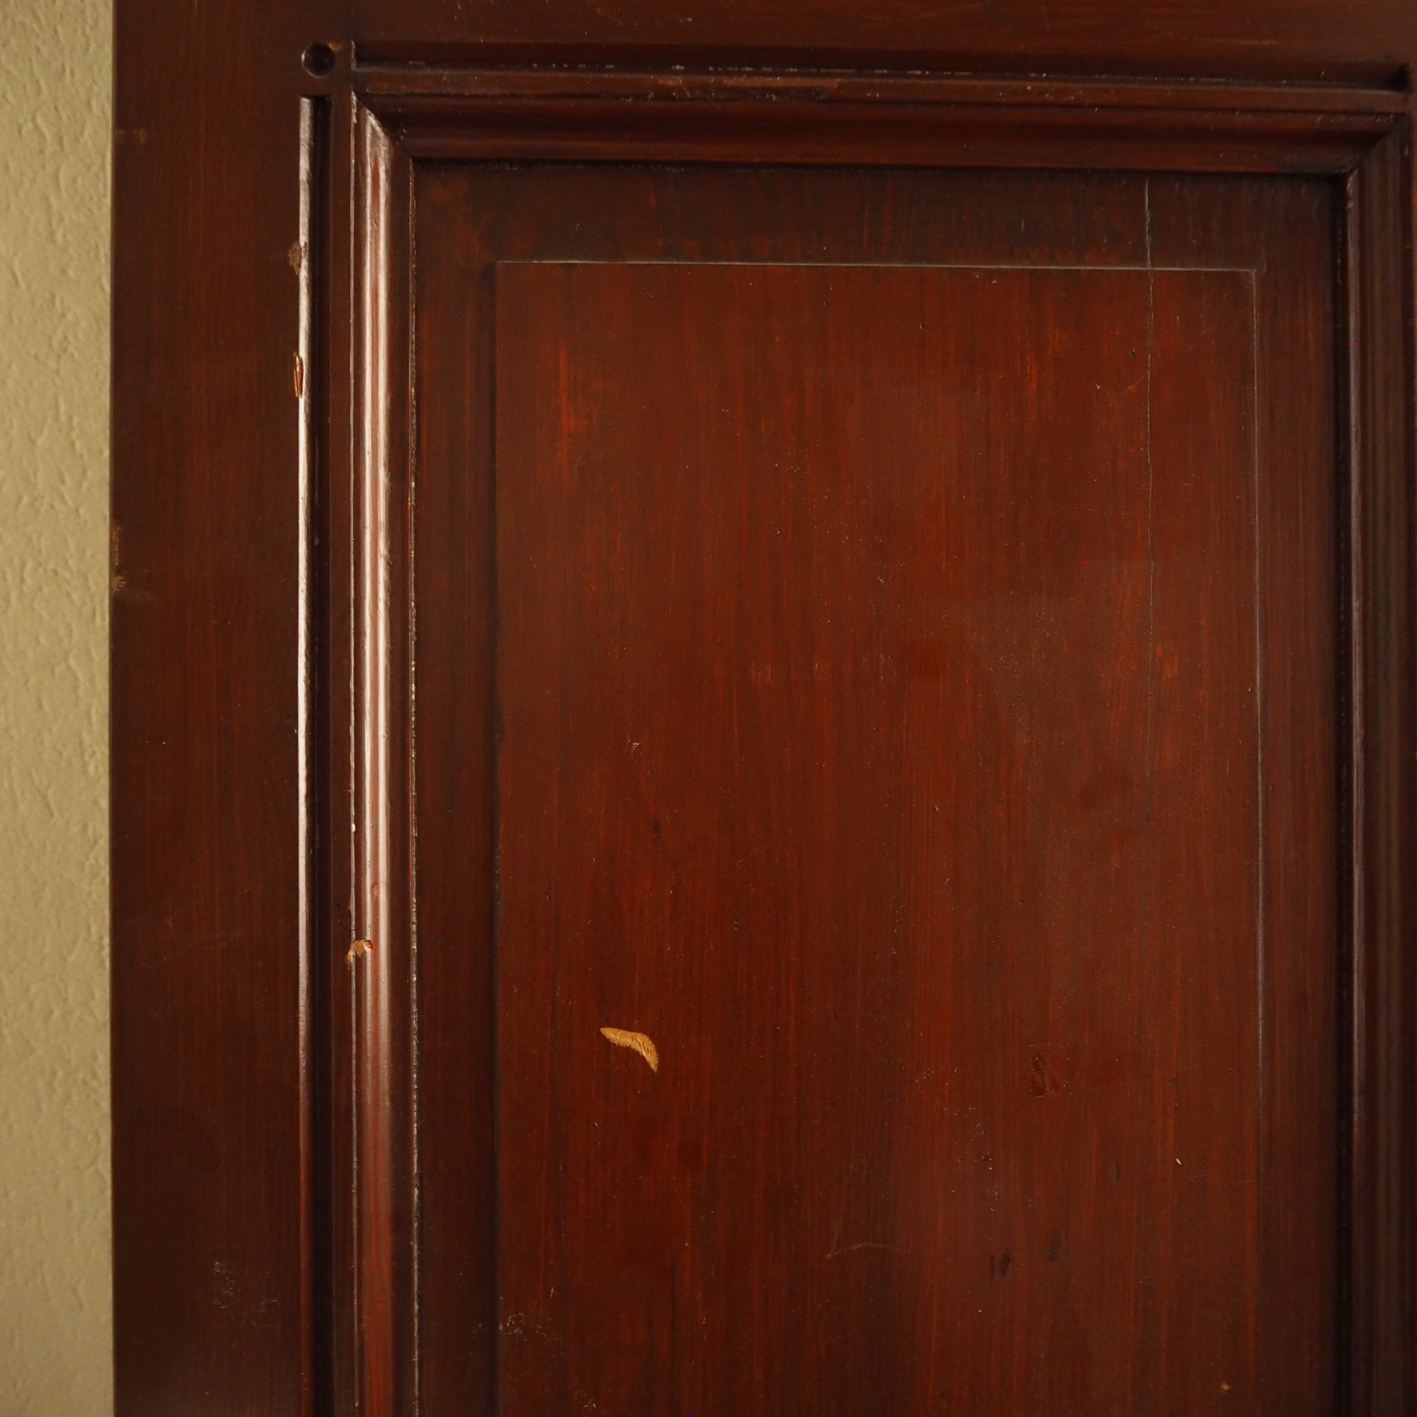 Solid varnished wooden door